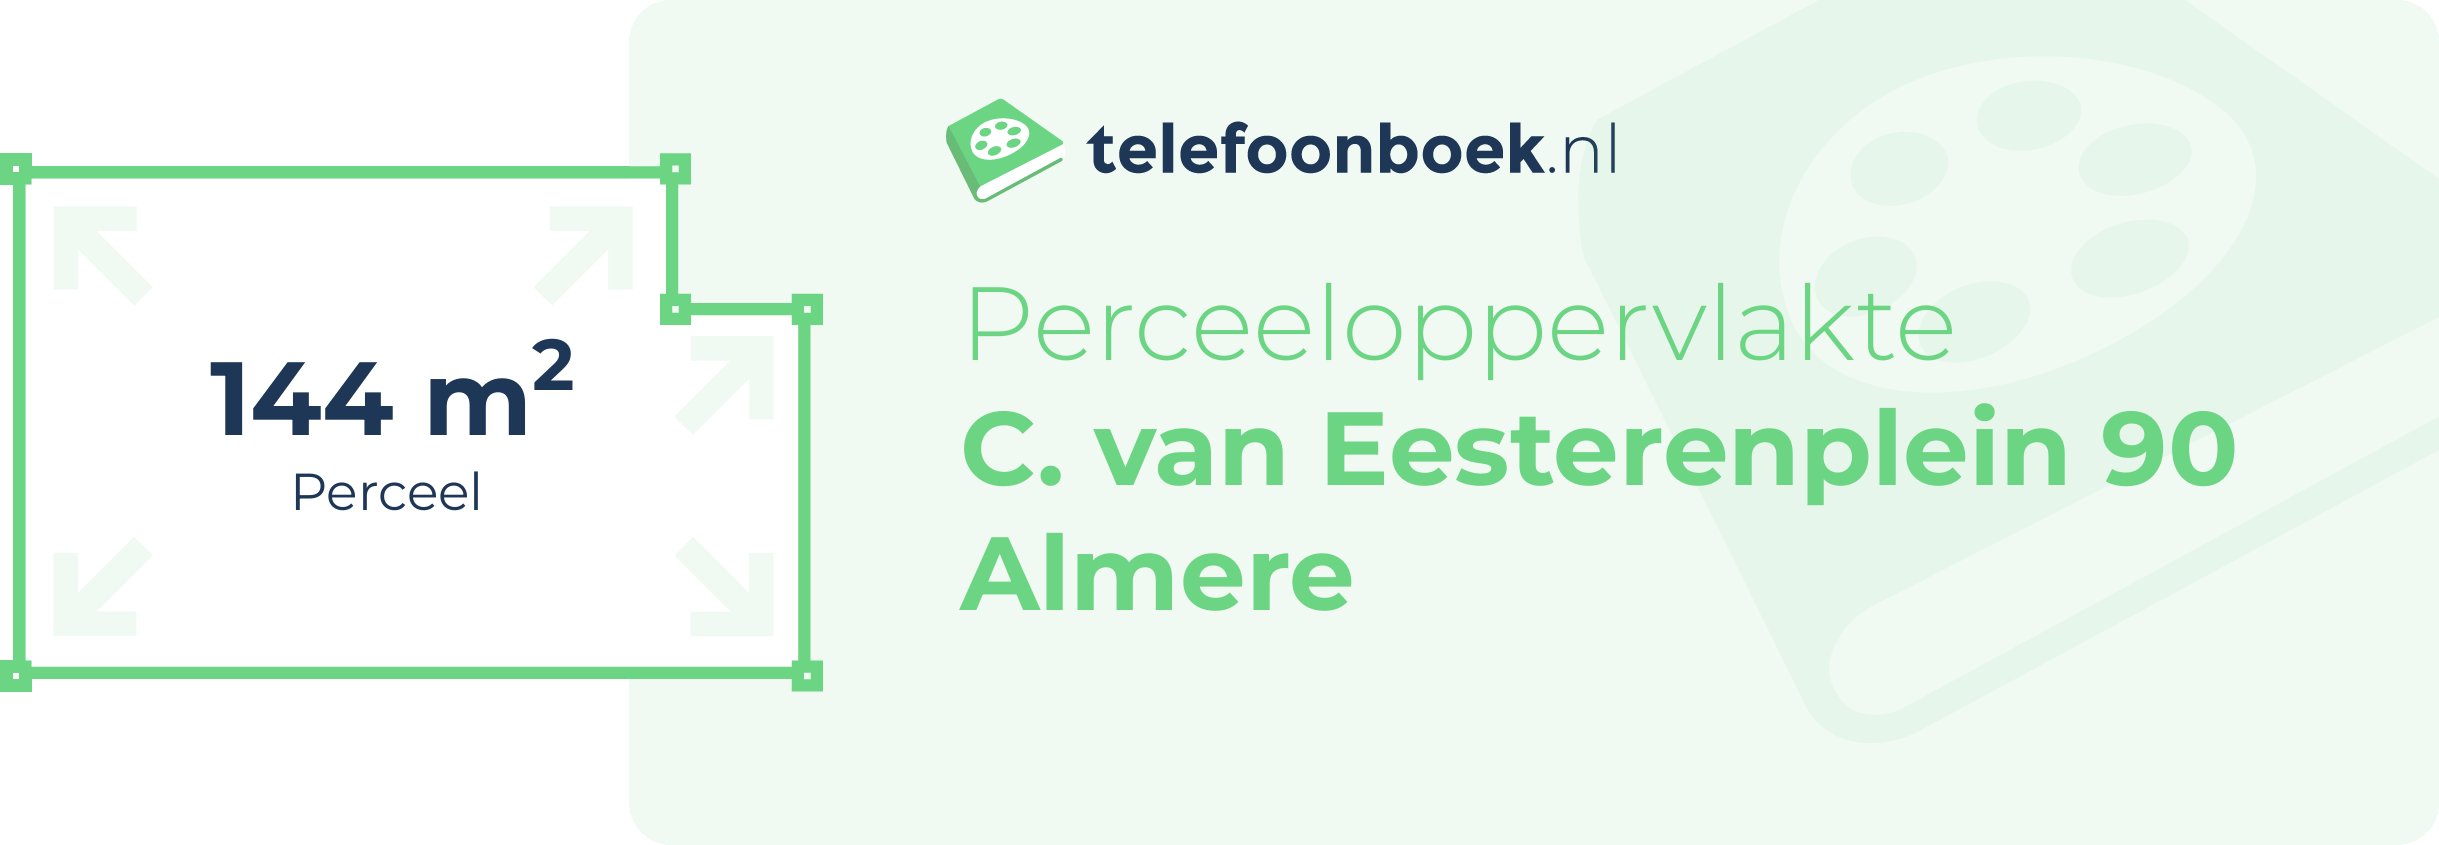 Perceeloppervlakte C. Van Eesterenplein 90 Almere